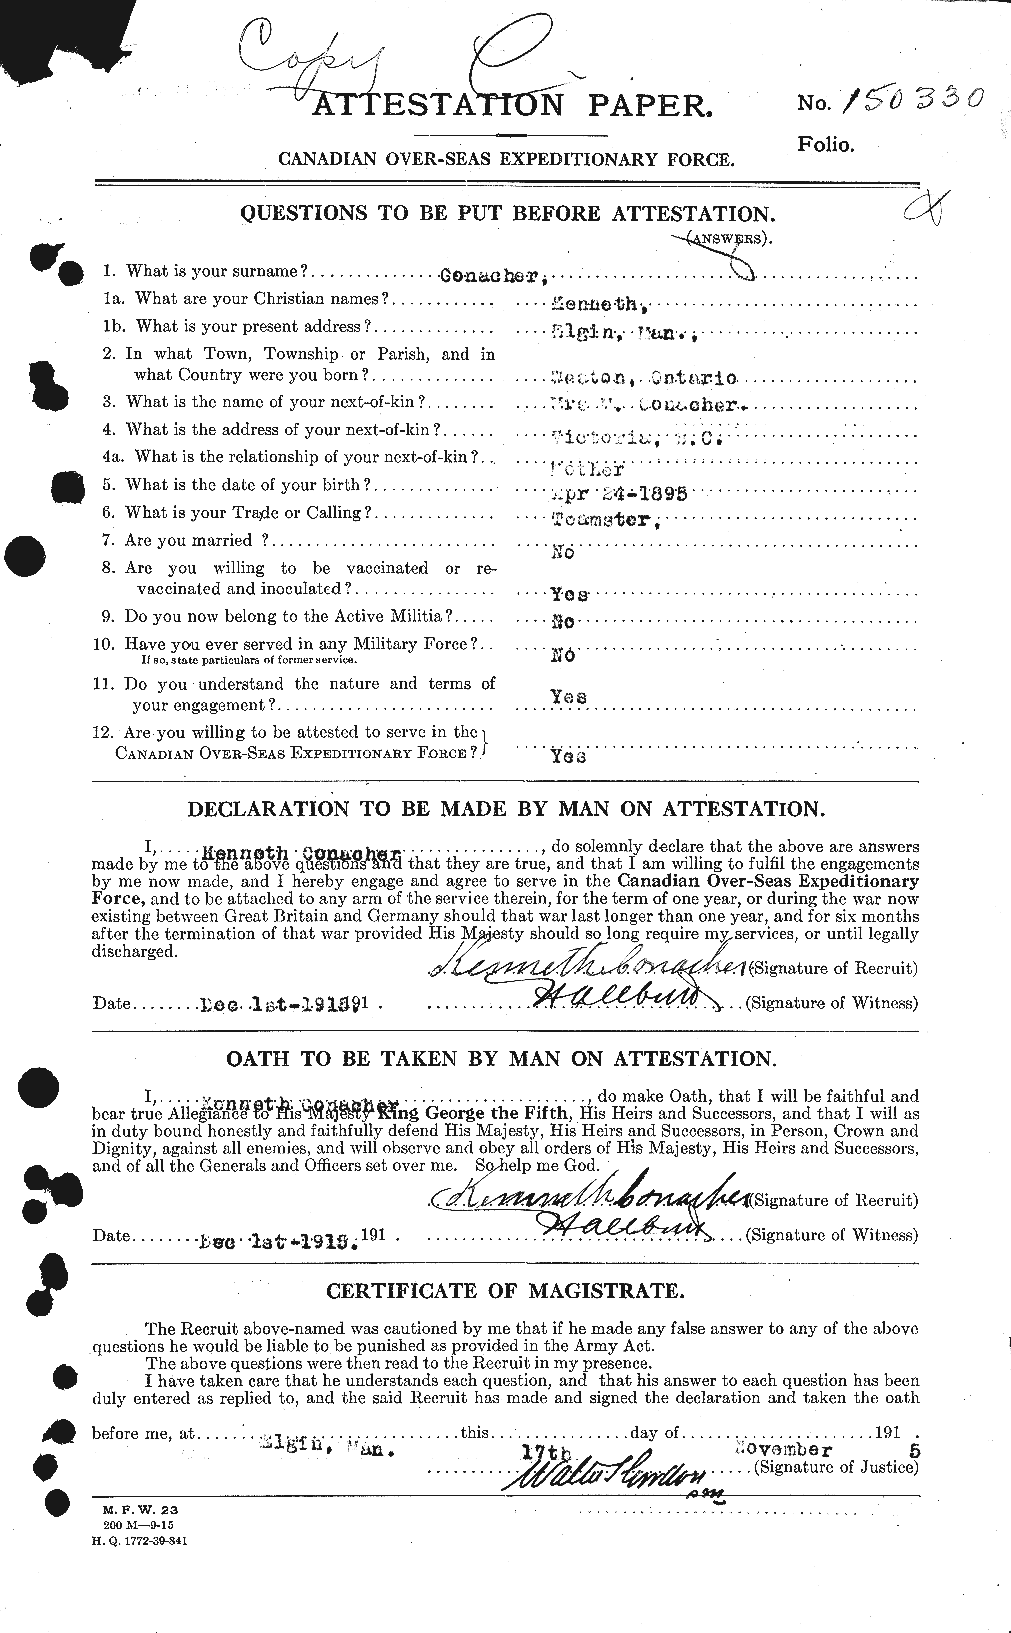 Dossiers du Personnel de la Première Guerre mondiale - CEC 067540a